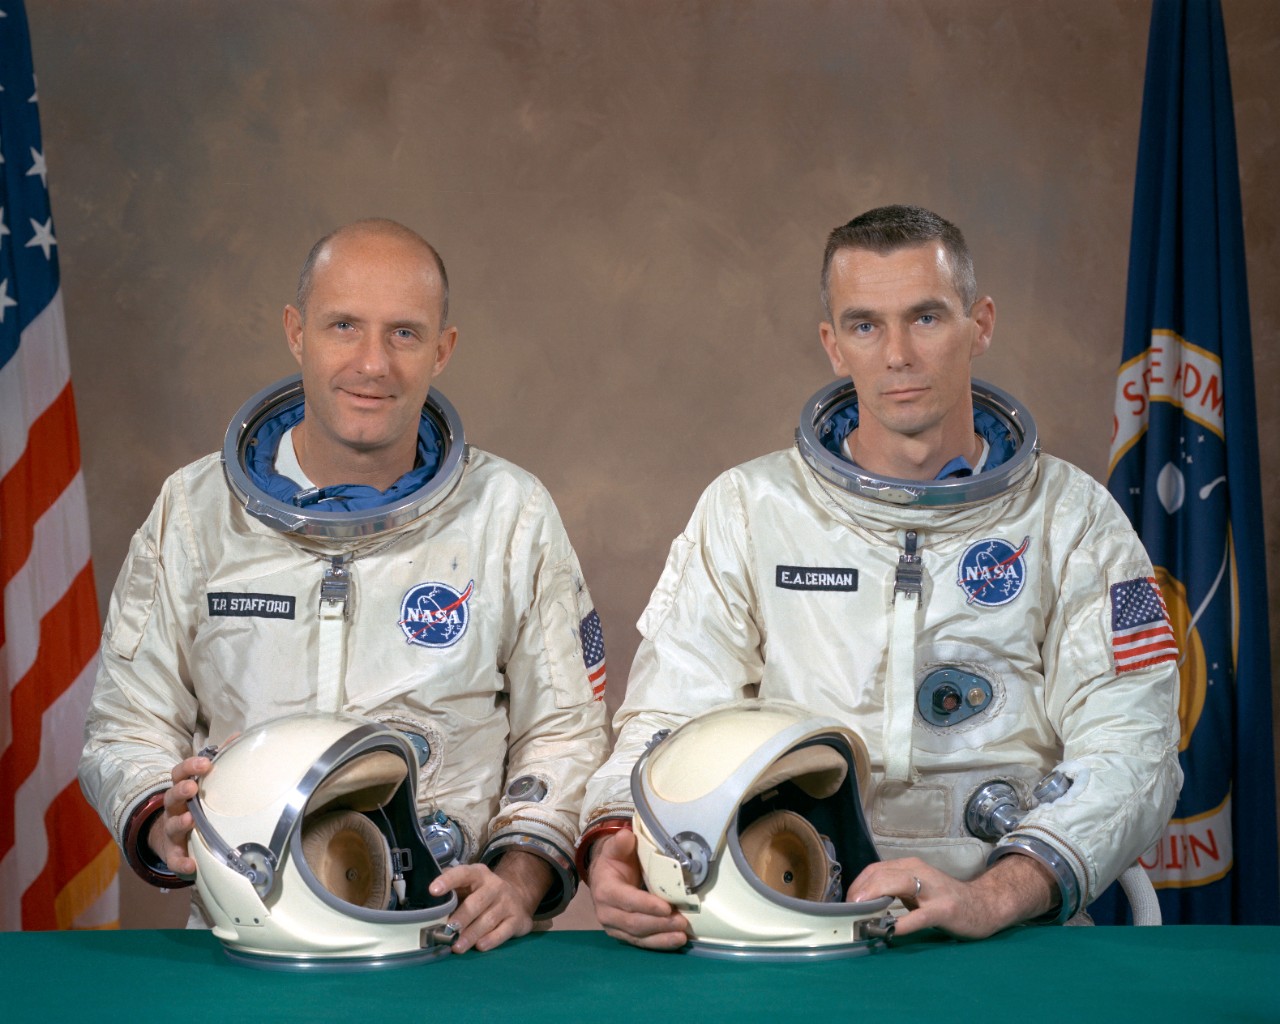 Gemini-9 prime crew portrait